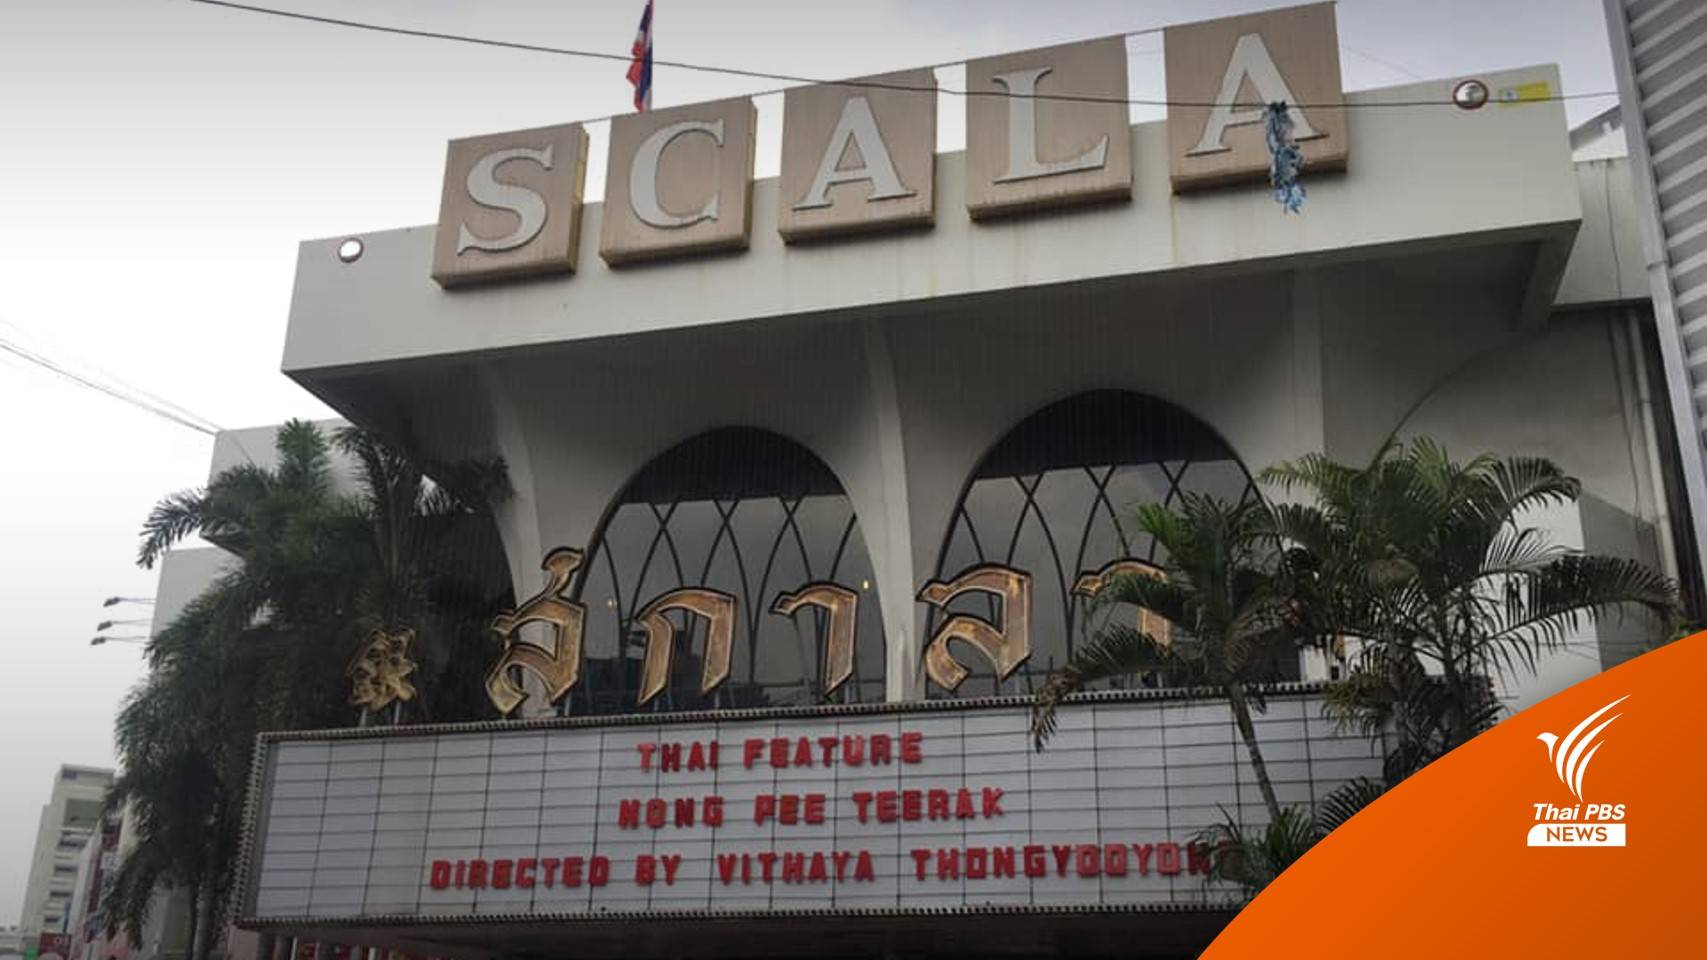 ปิดตำนาน 54 ปี เริ่มทุบทิ้ง "สกาลา" โรงหนังในความทรงจำ